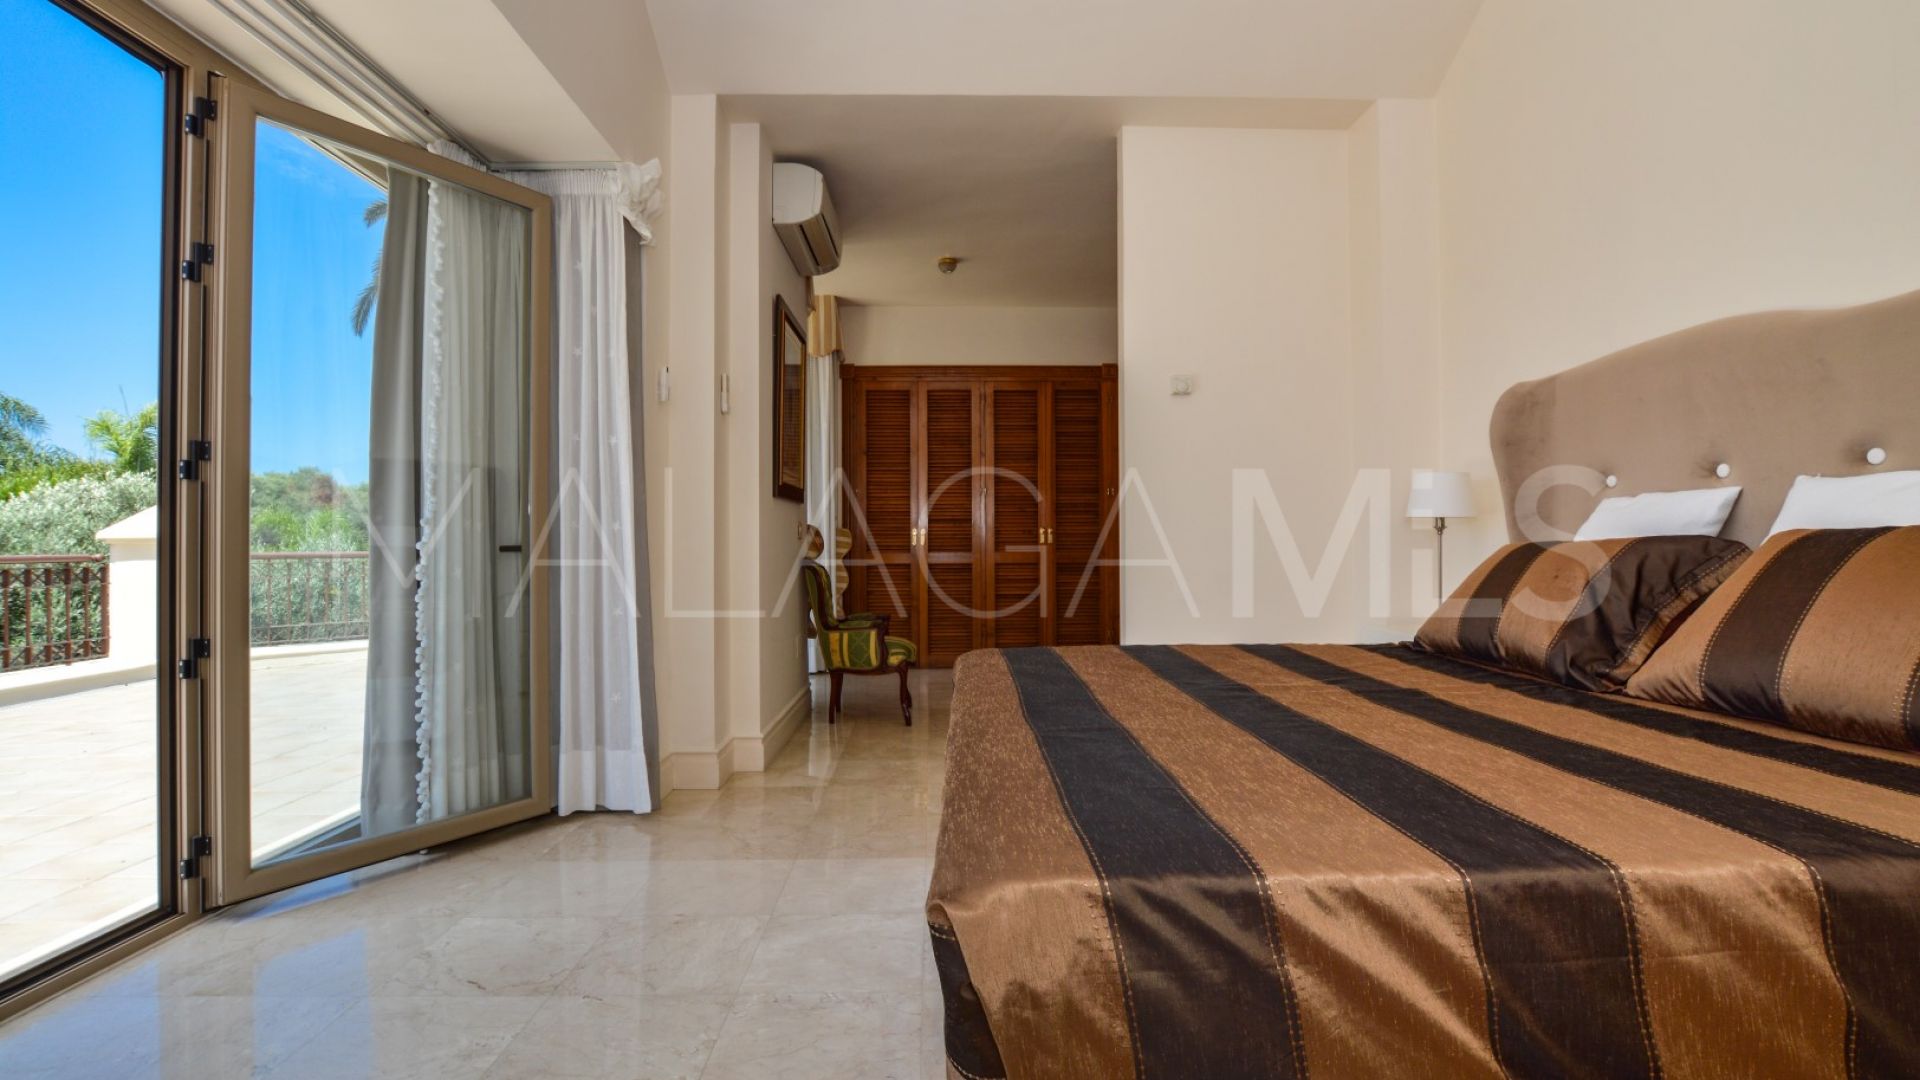 5 bedrooms villa in Costabella for sale